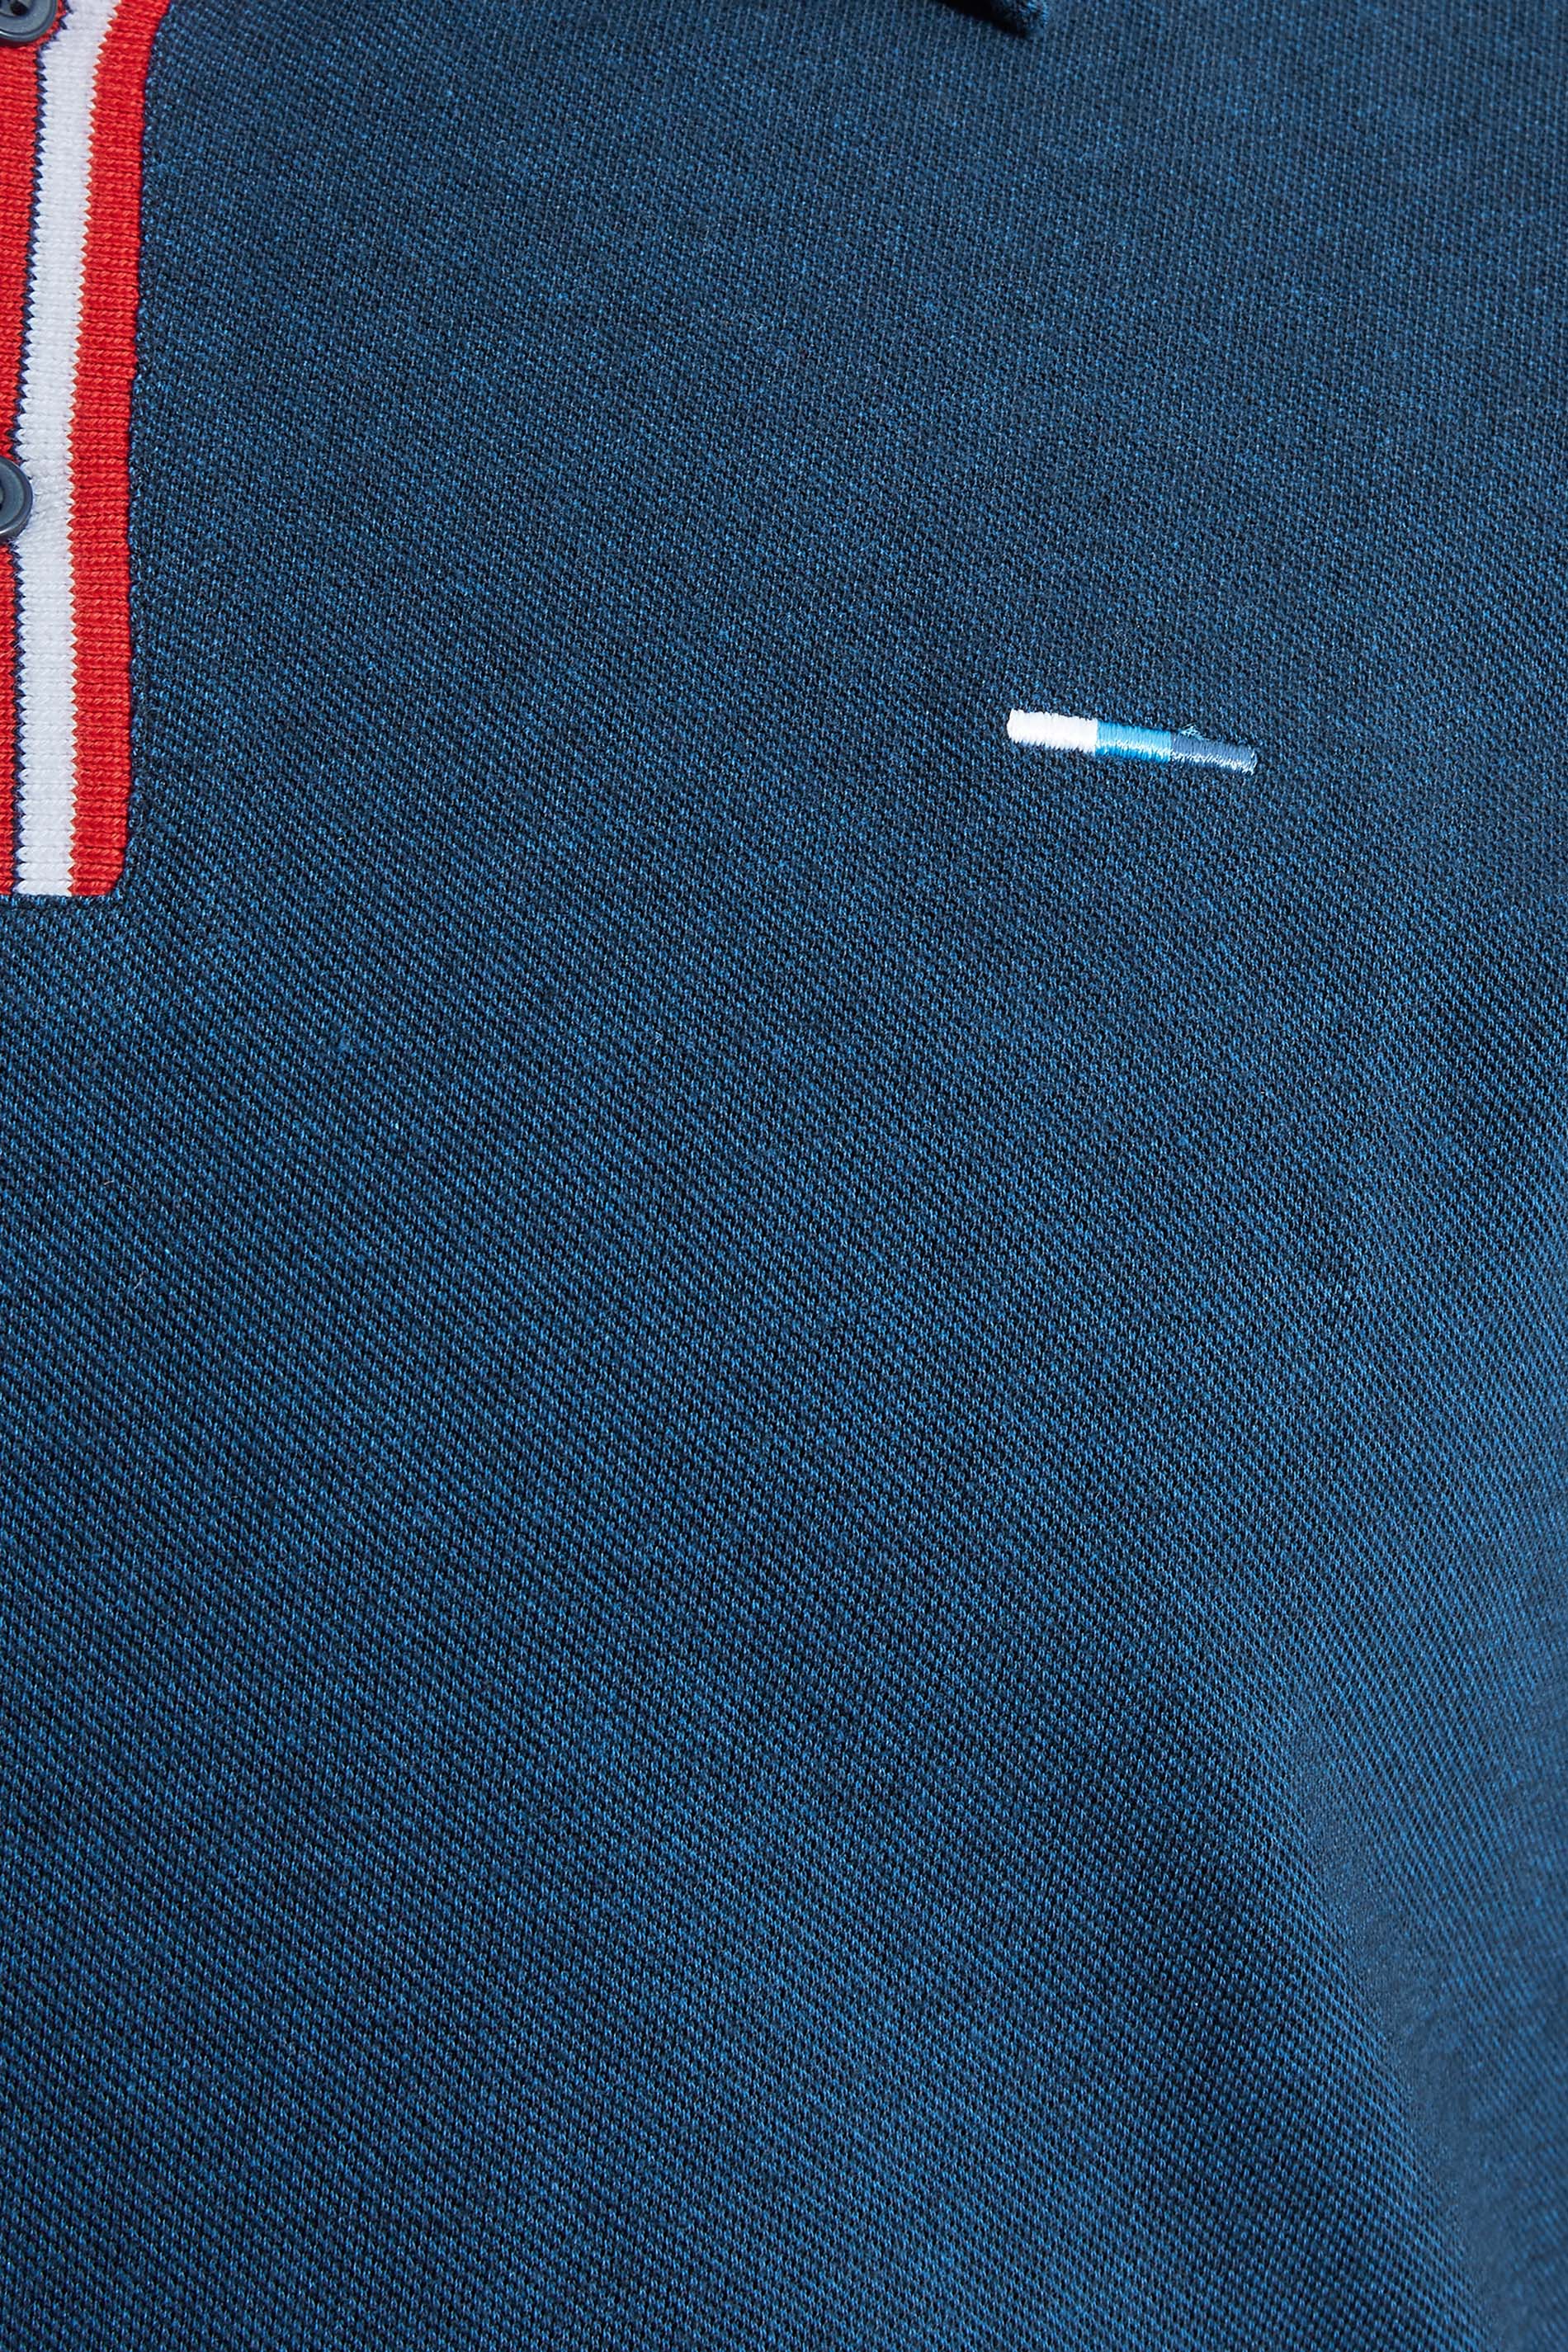 BadRhino Big & Tall Navy Blue Contrast Stripe Placket Polo Shirt | BadRhino